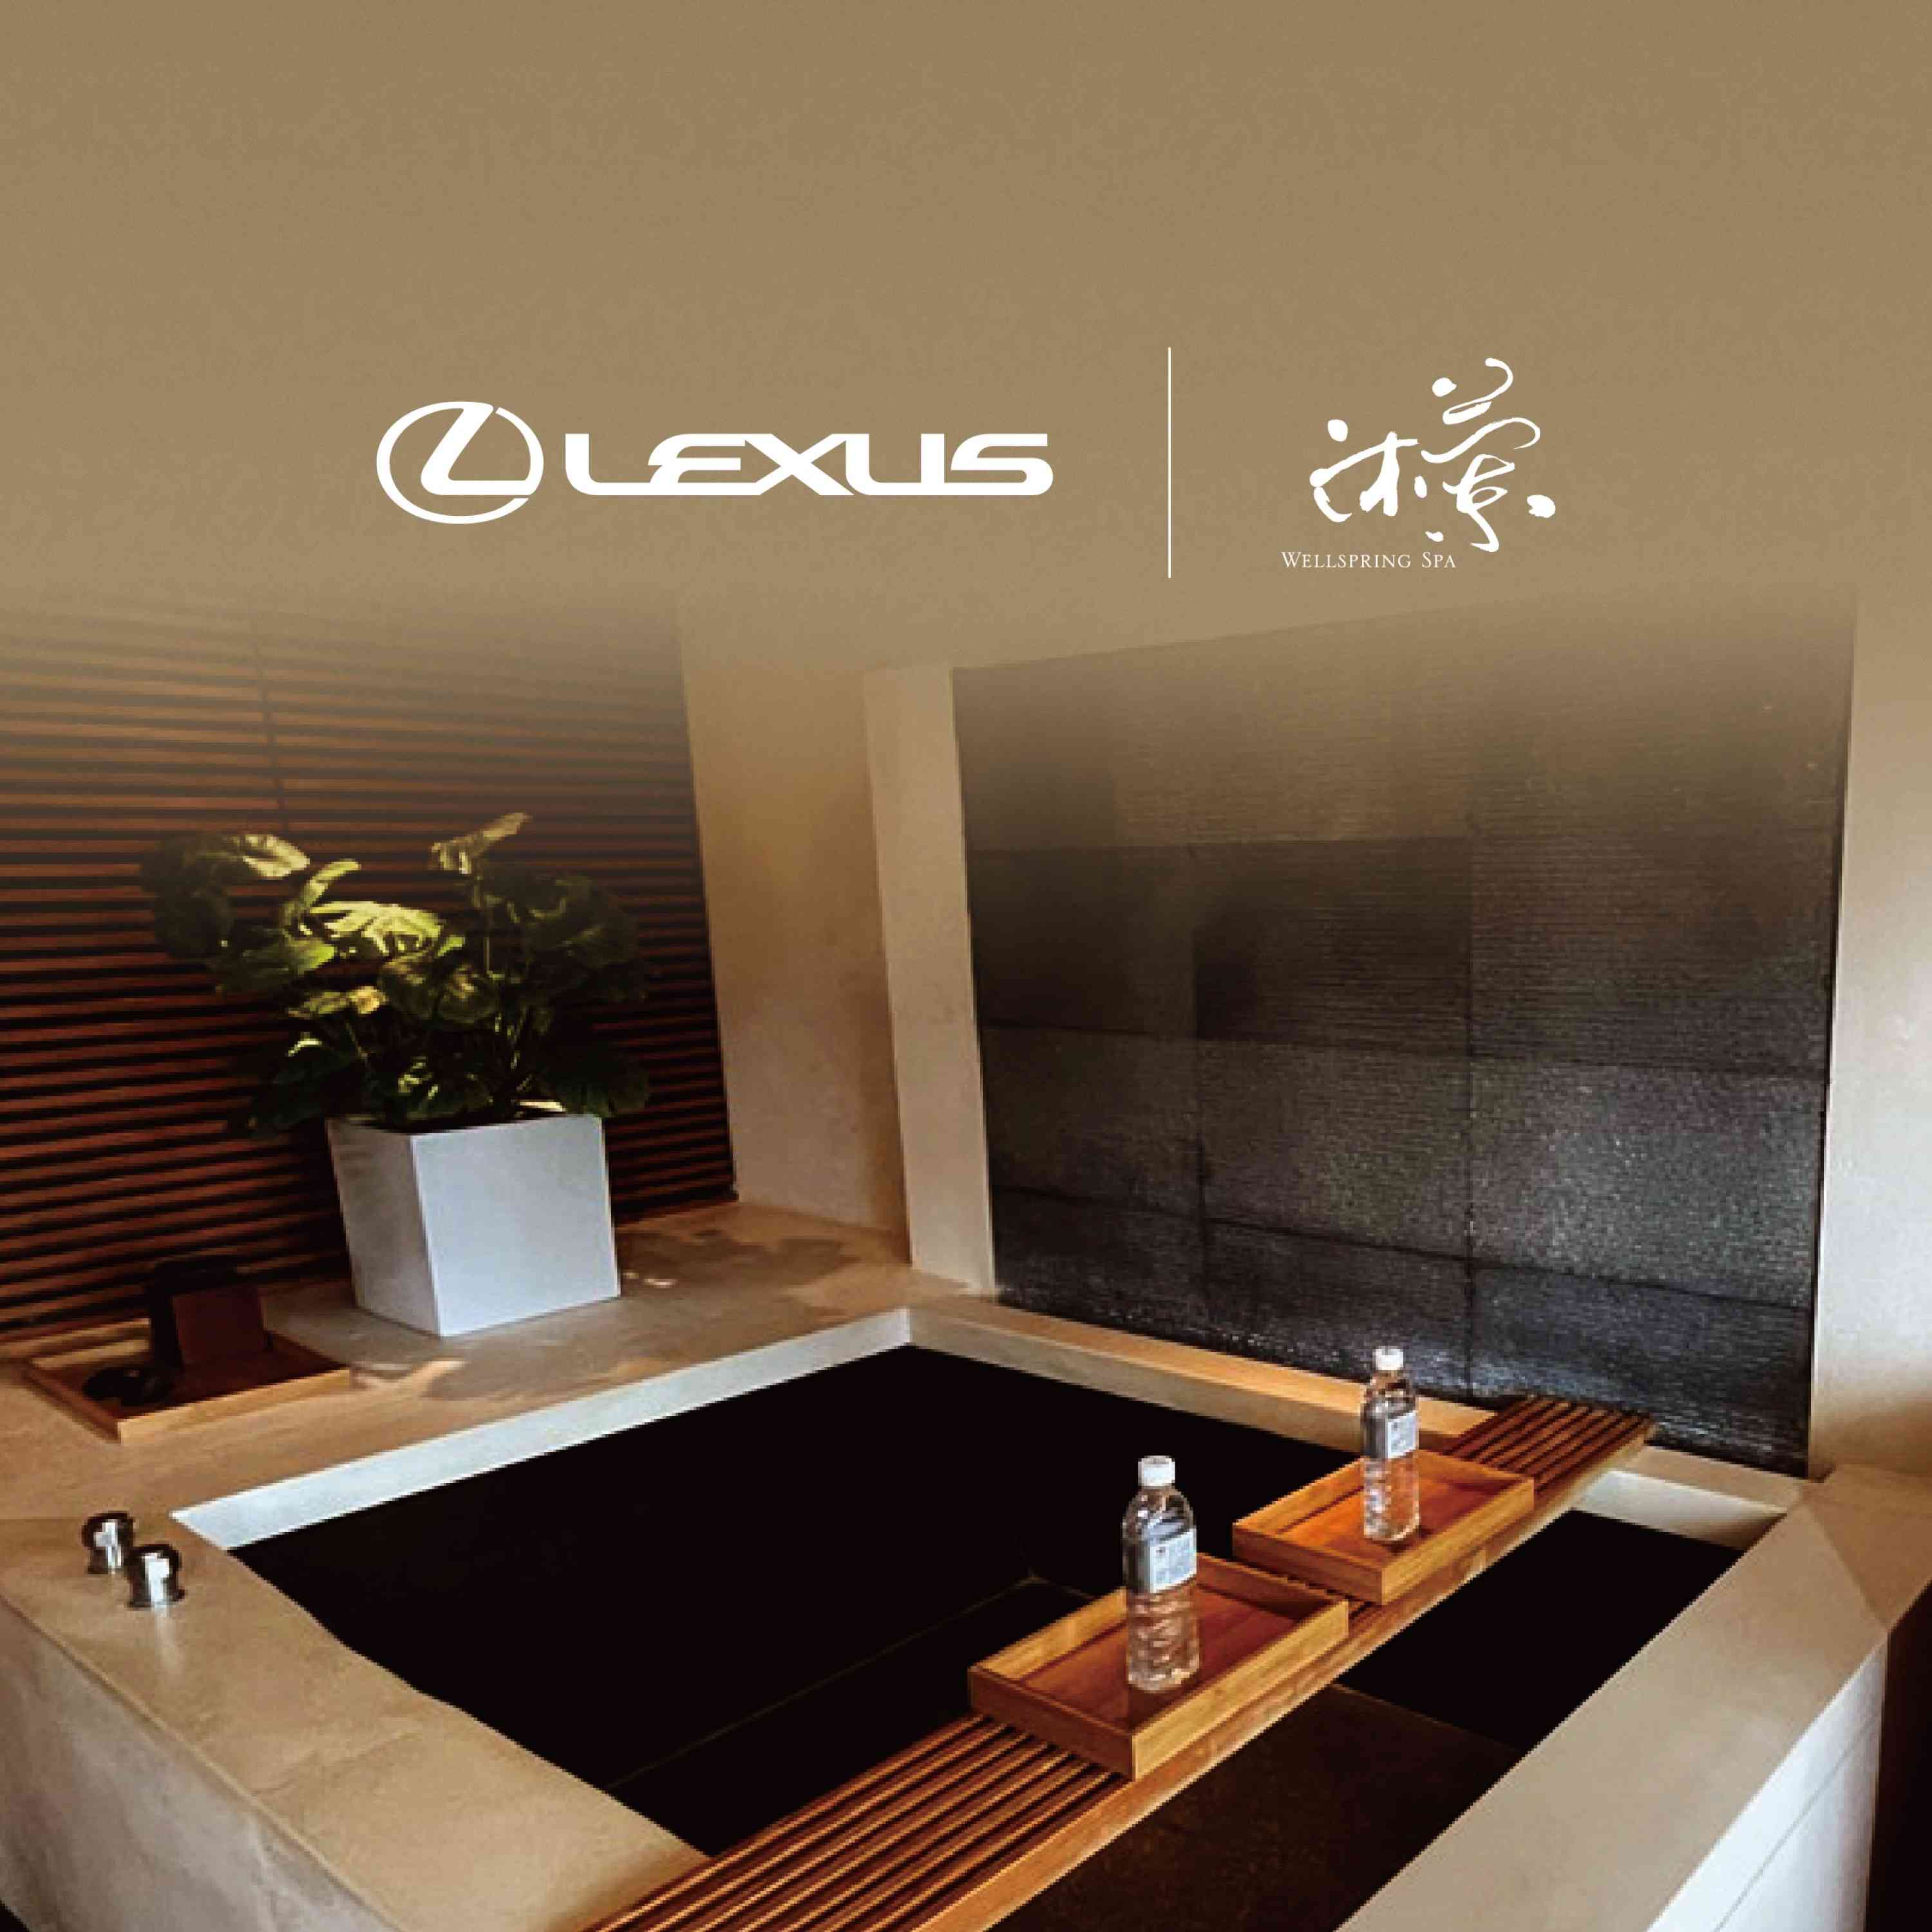 LEXUS獨家聯名台北晶華酒店沐蘭SPA提供精緻放鬆療程 打造獨一無二奢華體驗